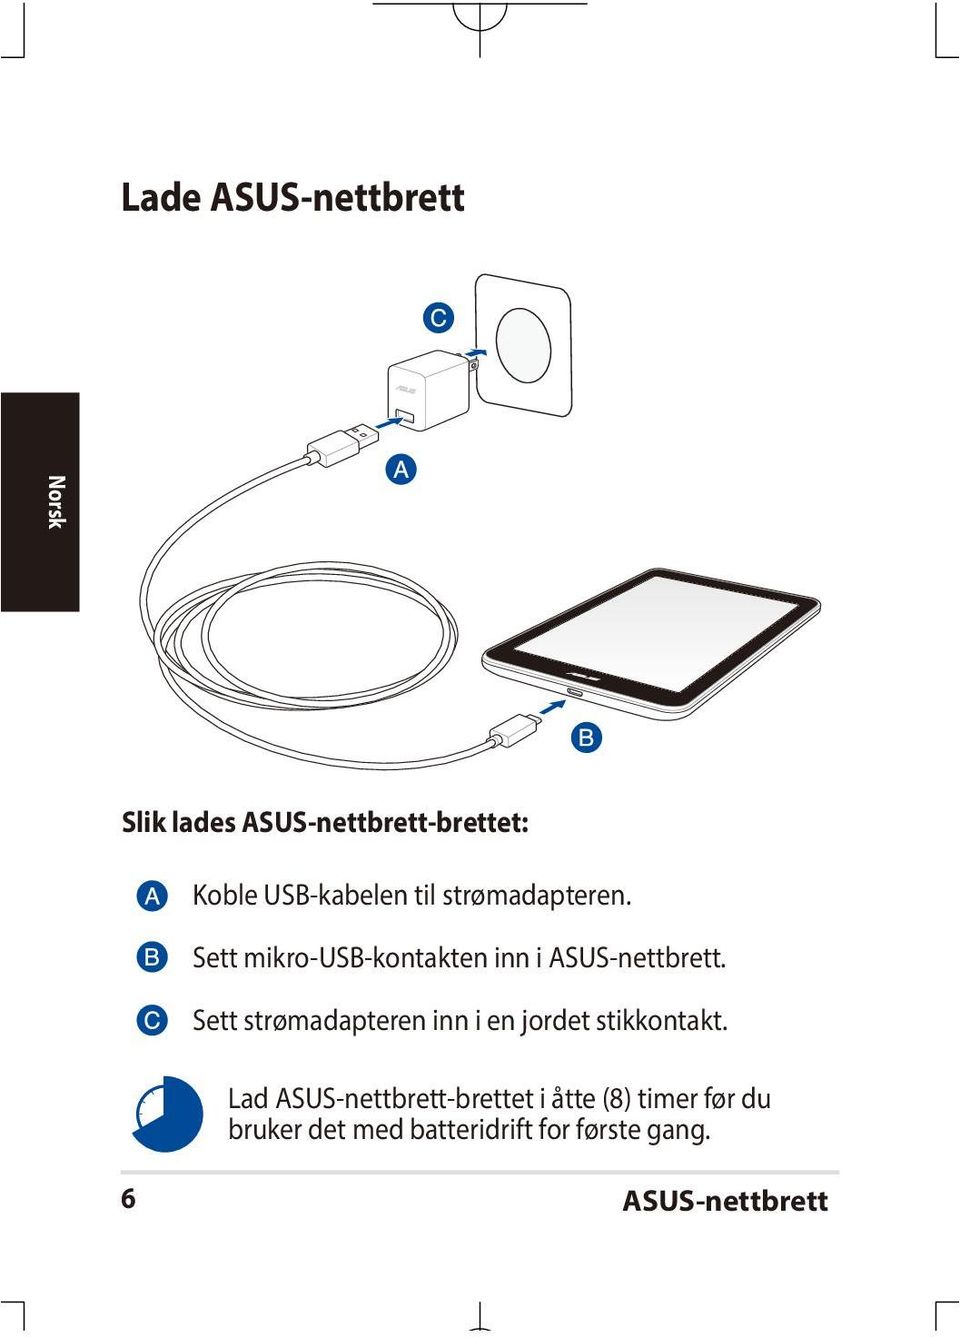 Sett mikro-usb-kontakten inn i ASUS-nettbrett.